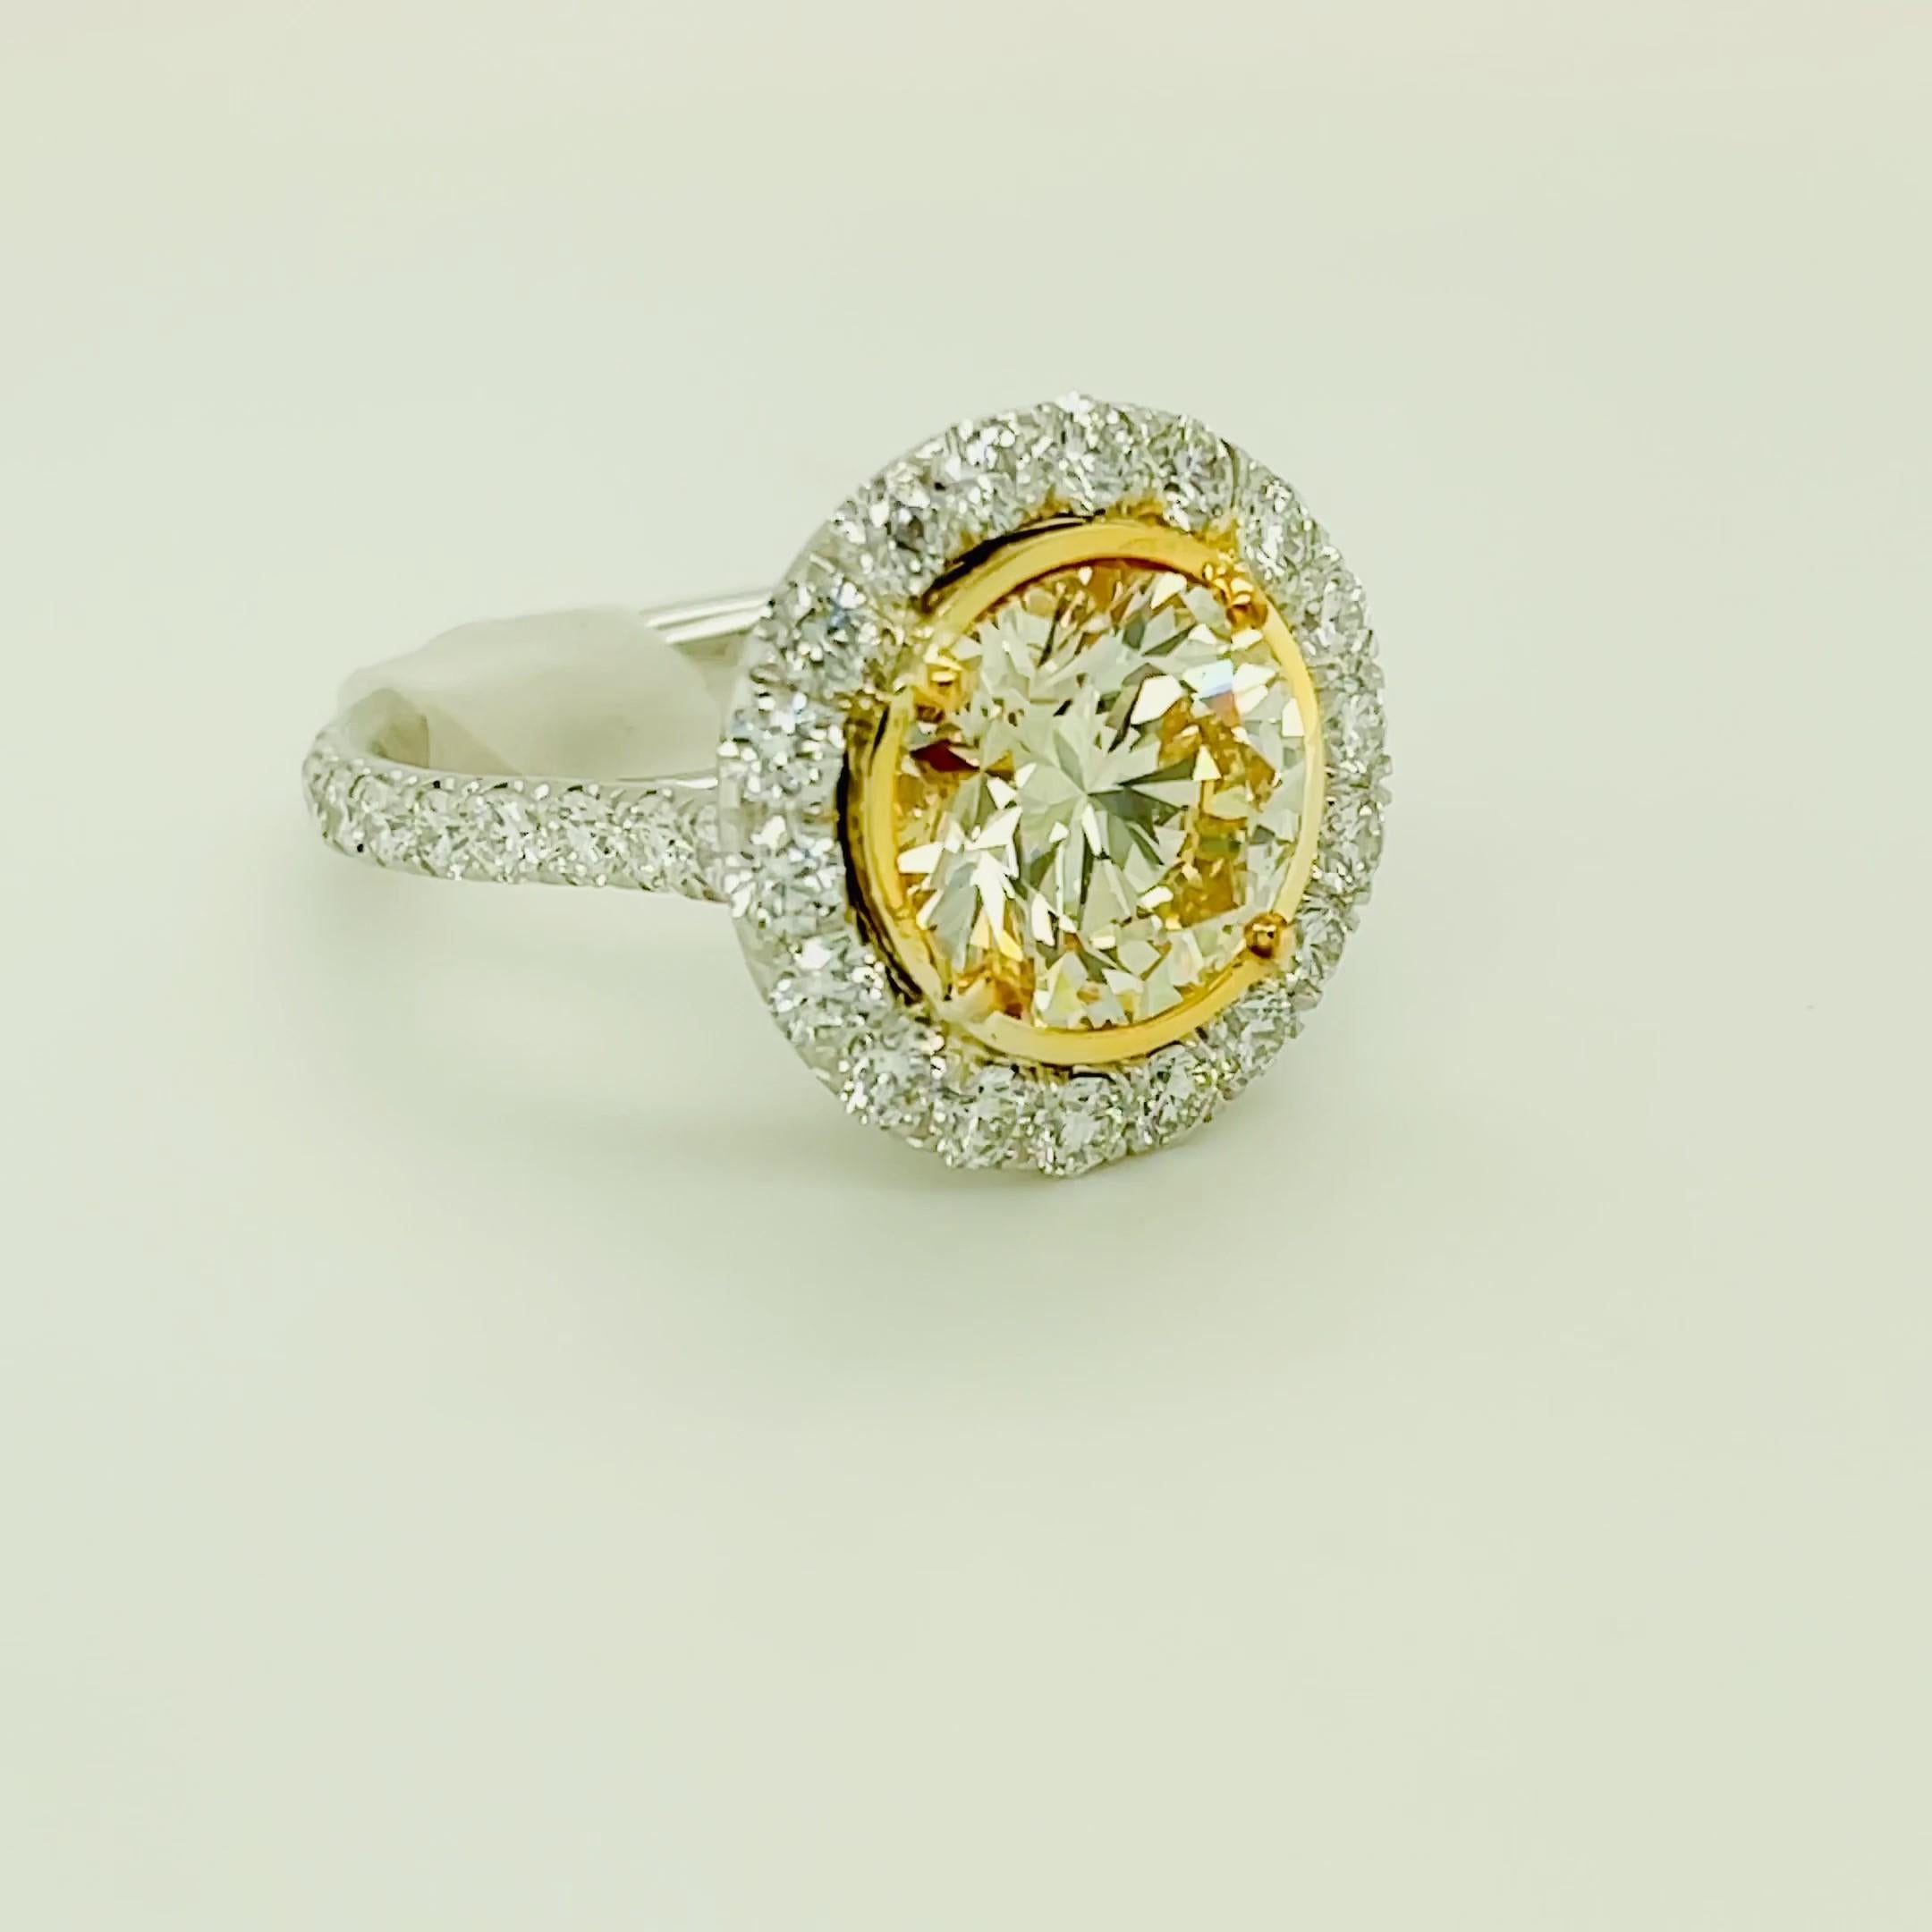 Round Cut Round Yellow Diamond Ring 4.01 Carat, Set in Platinum/18 Karat Yellow Gold